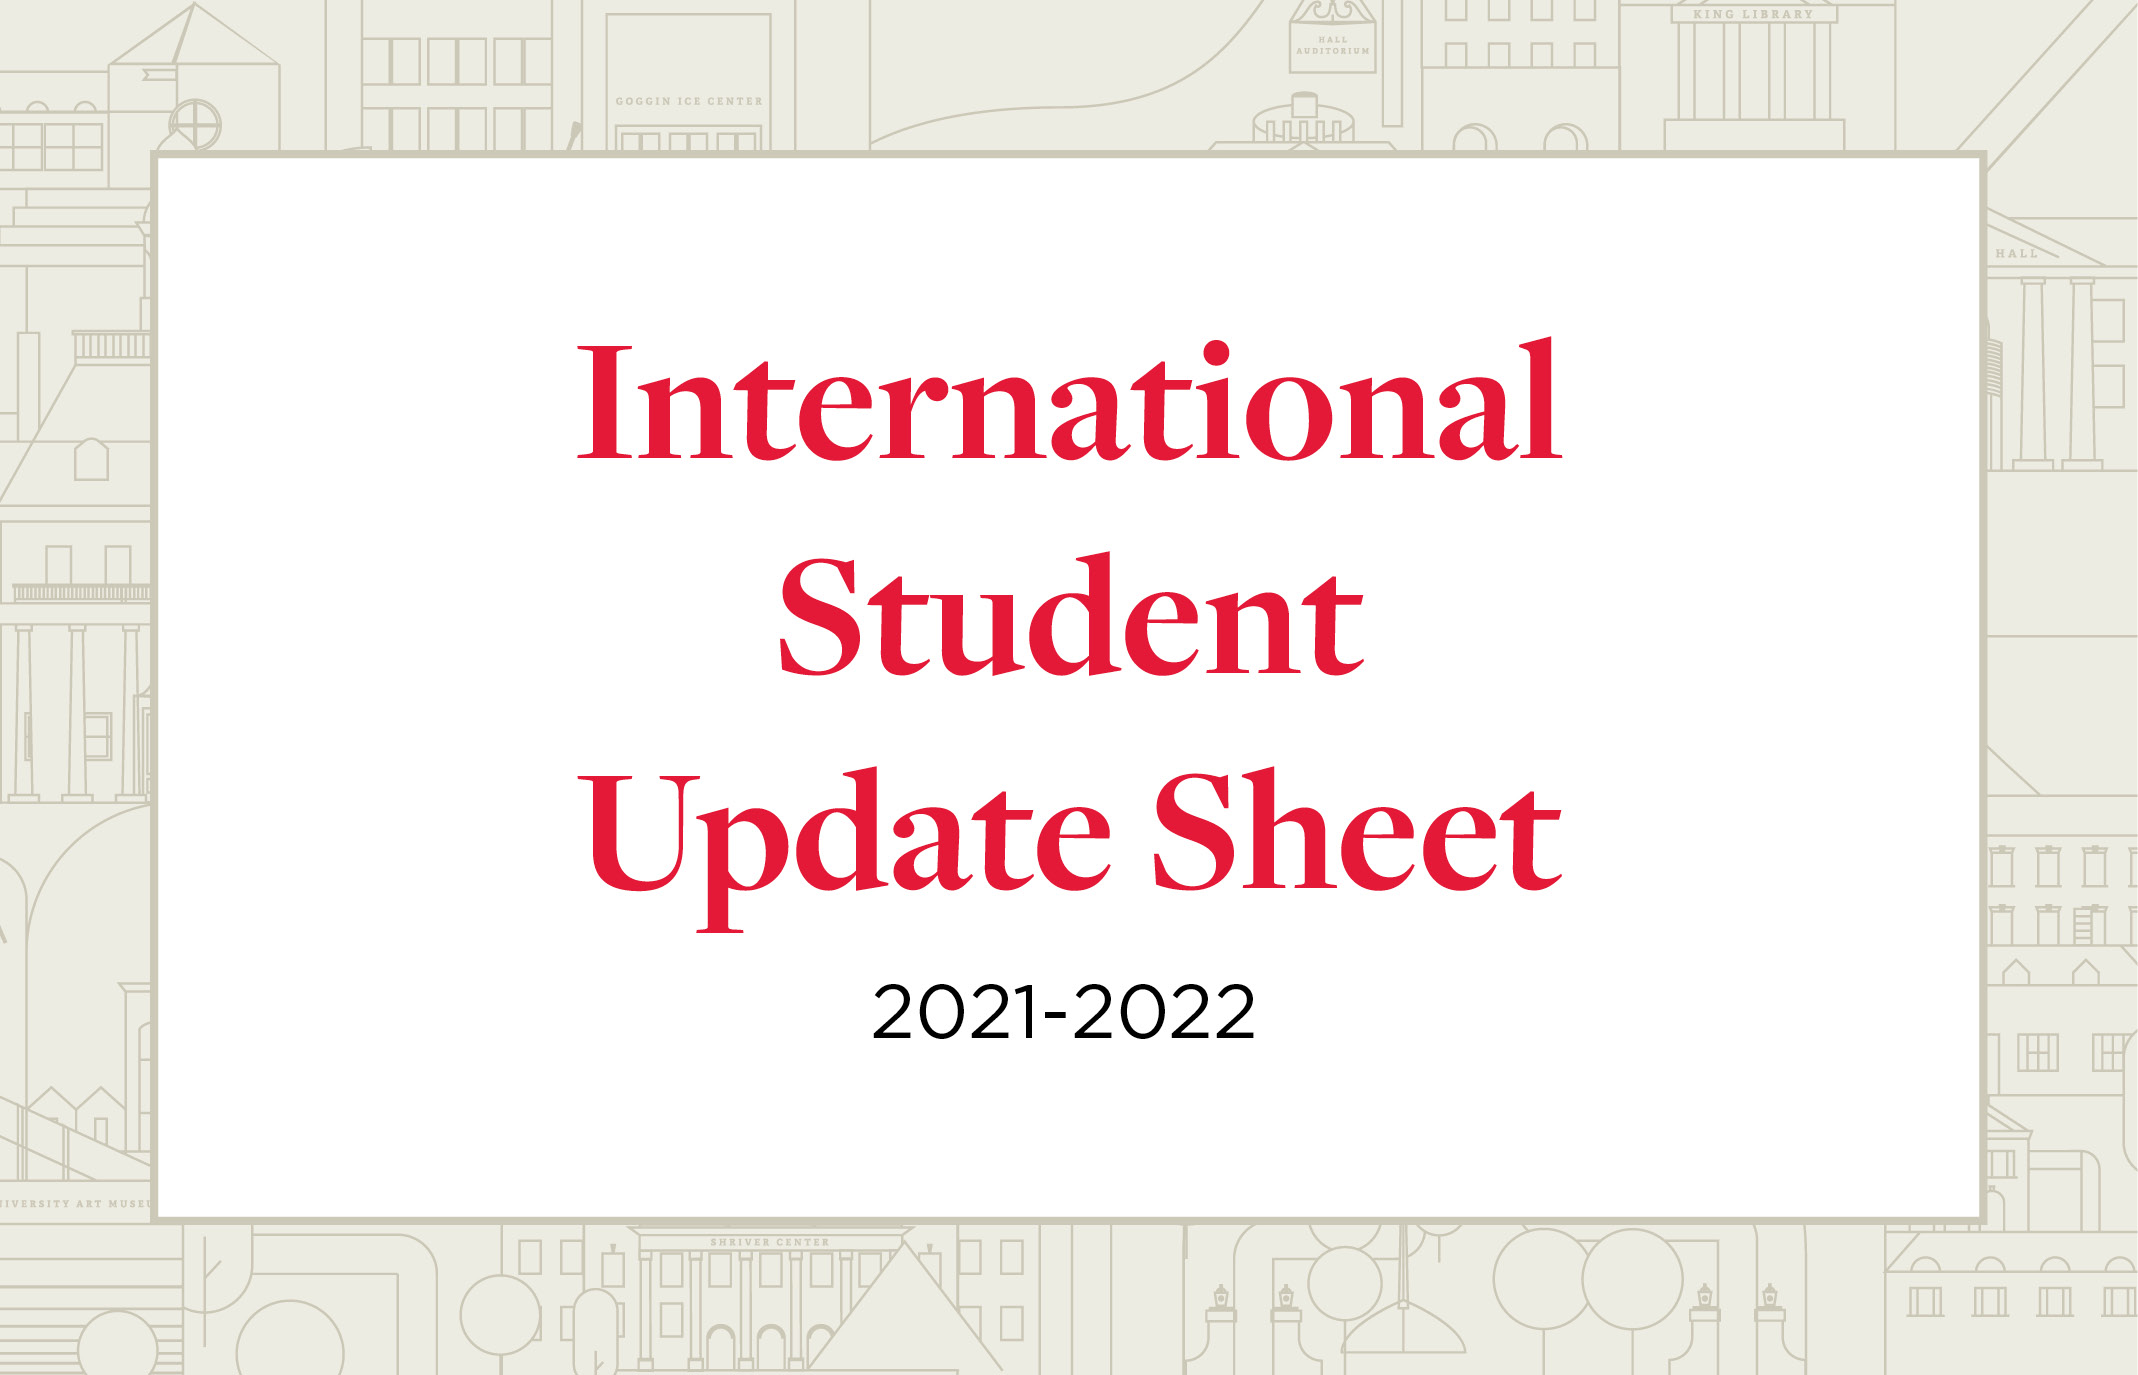 International Student Update Sheet 2021-2022